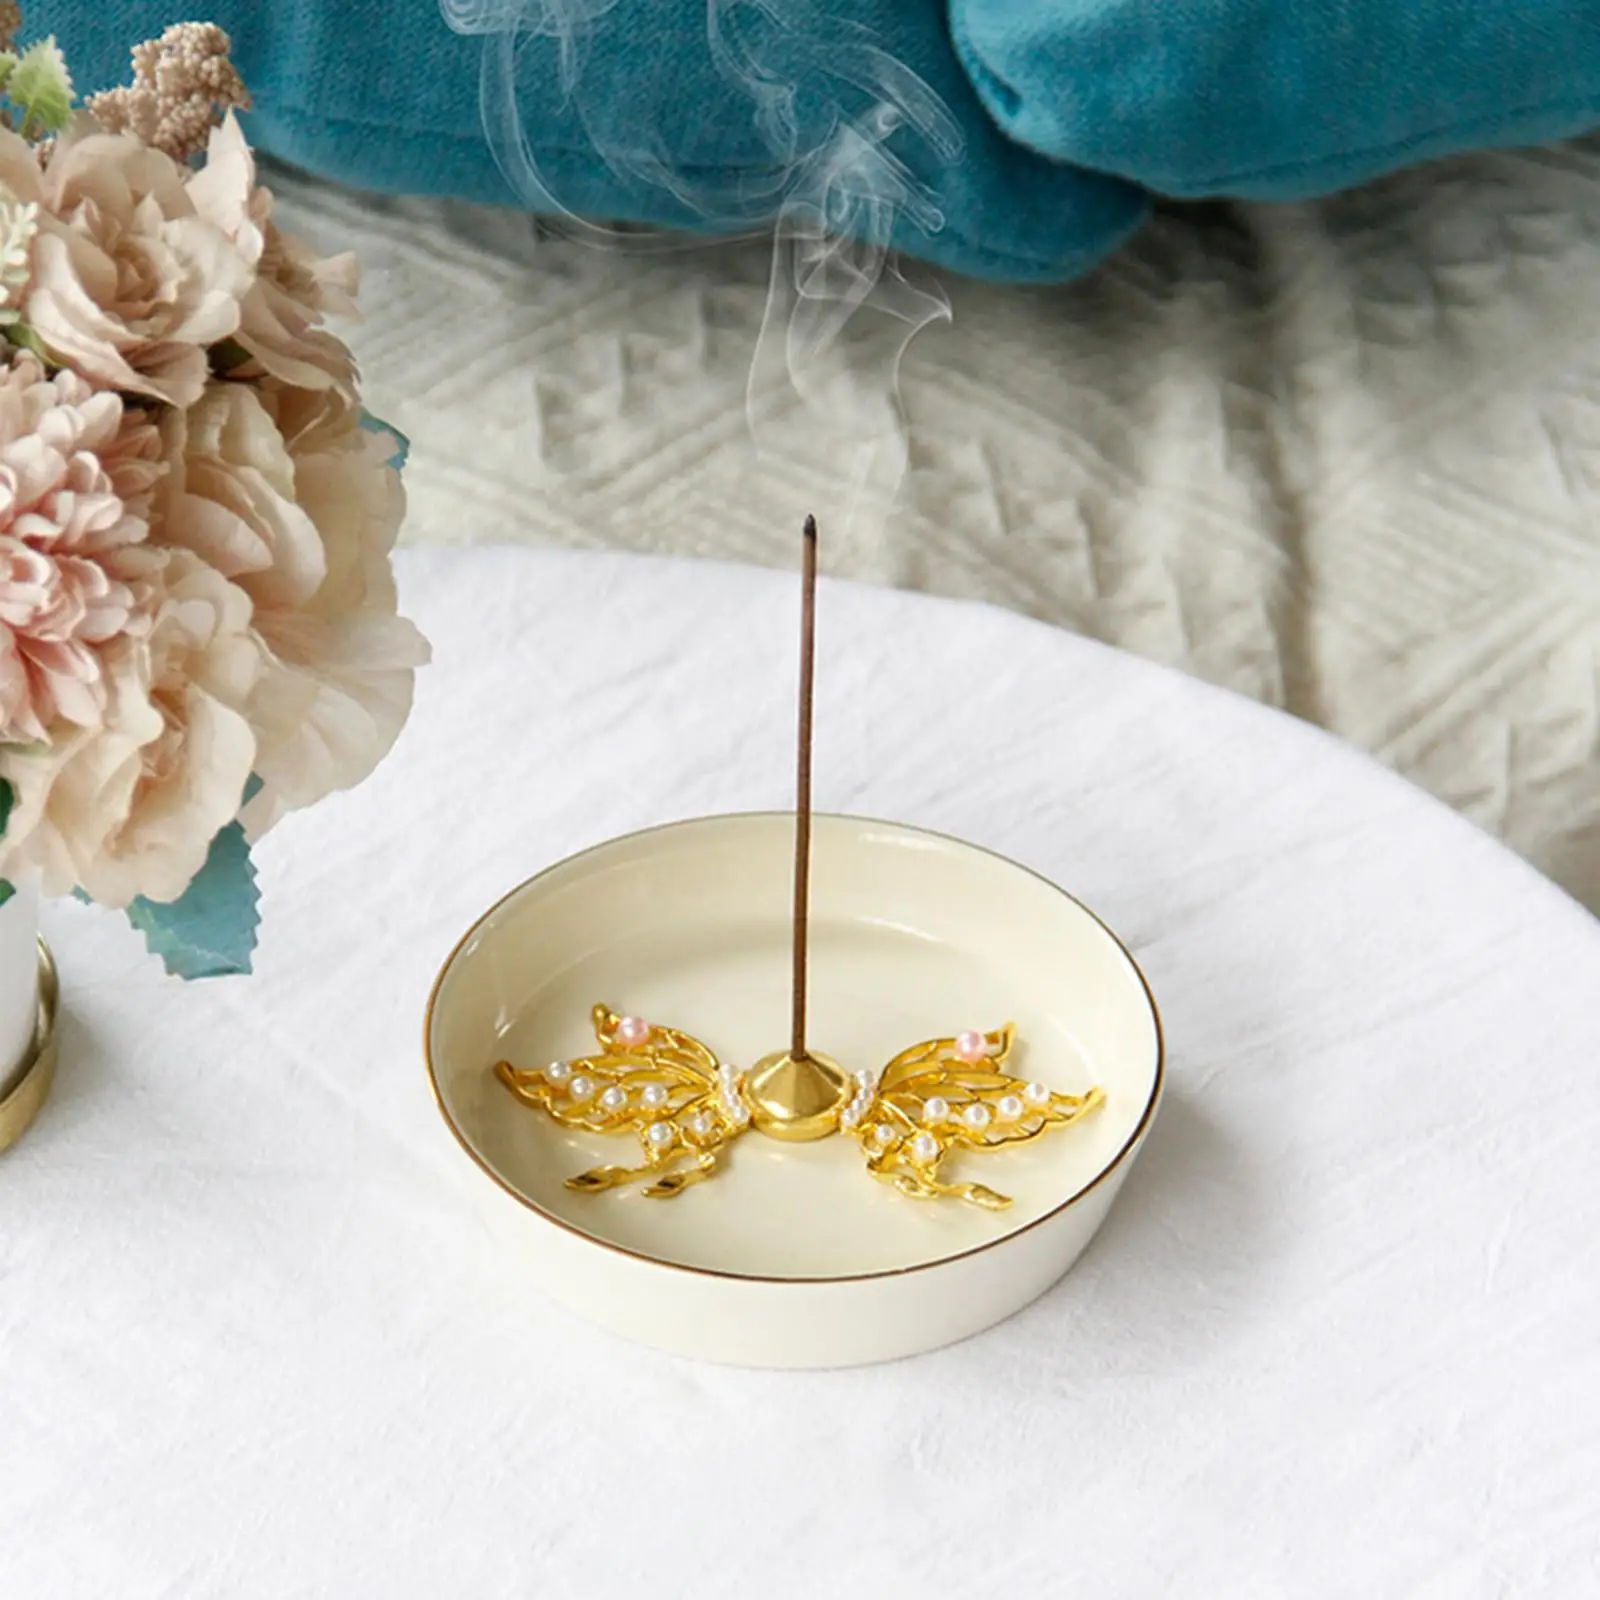 Incense Burner Holder Decoration with Ash Plate Meditation Incense Holder